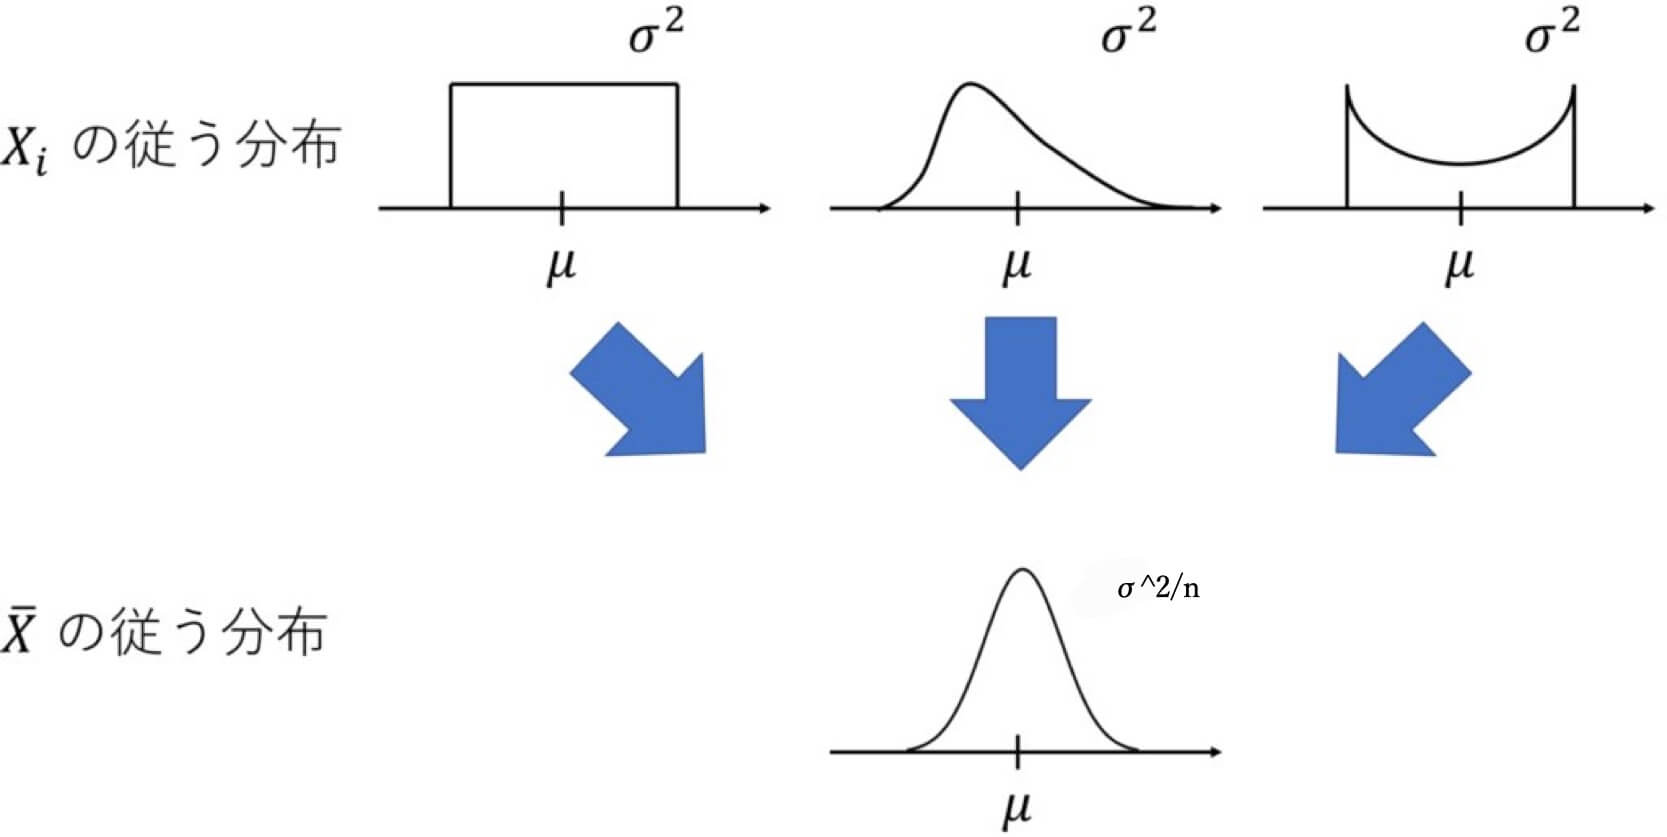 中心極限定理のイメージ図